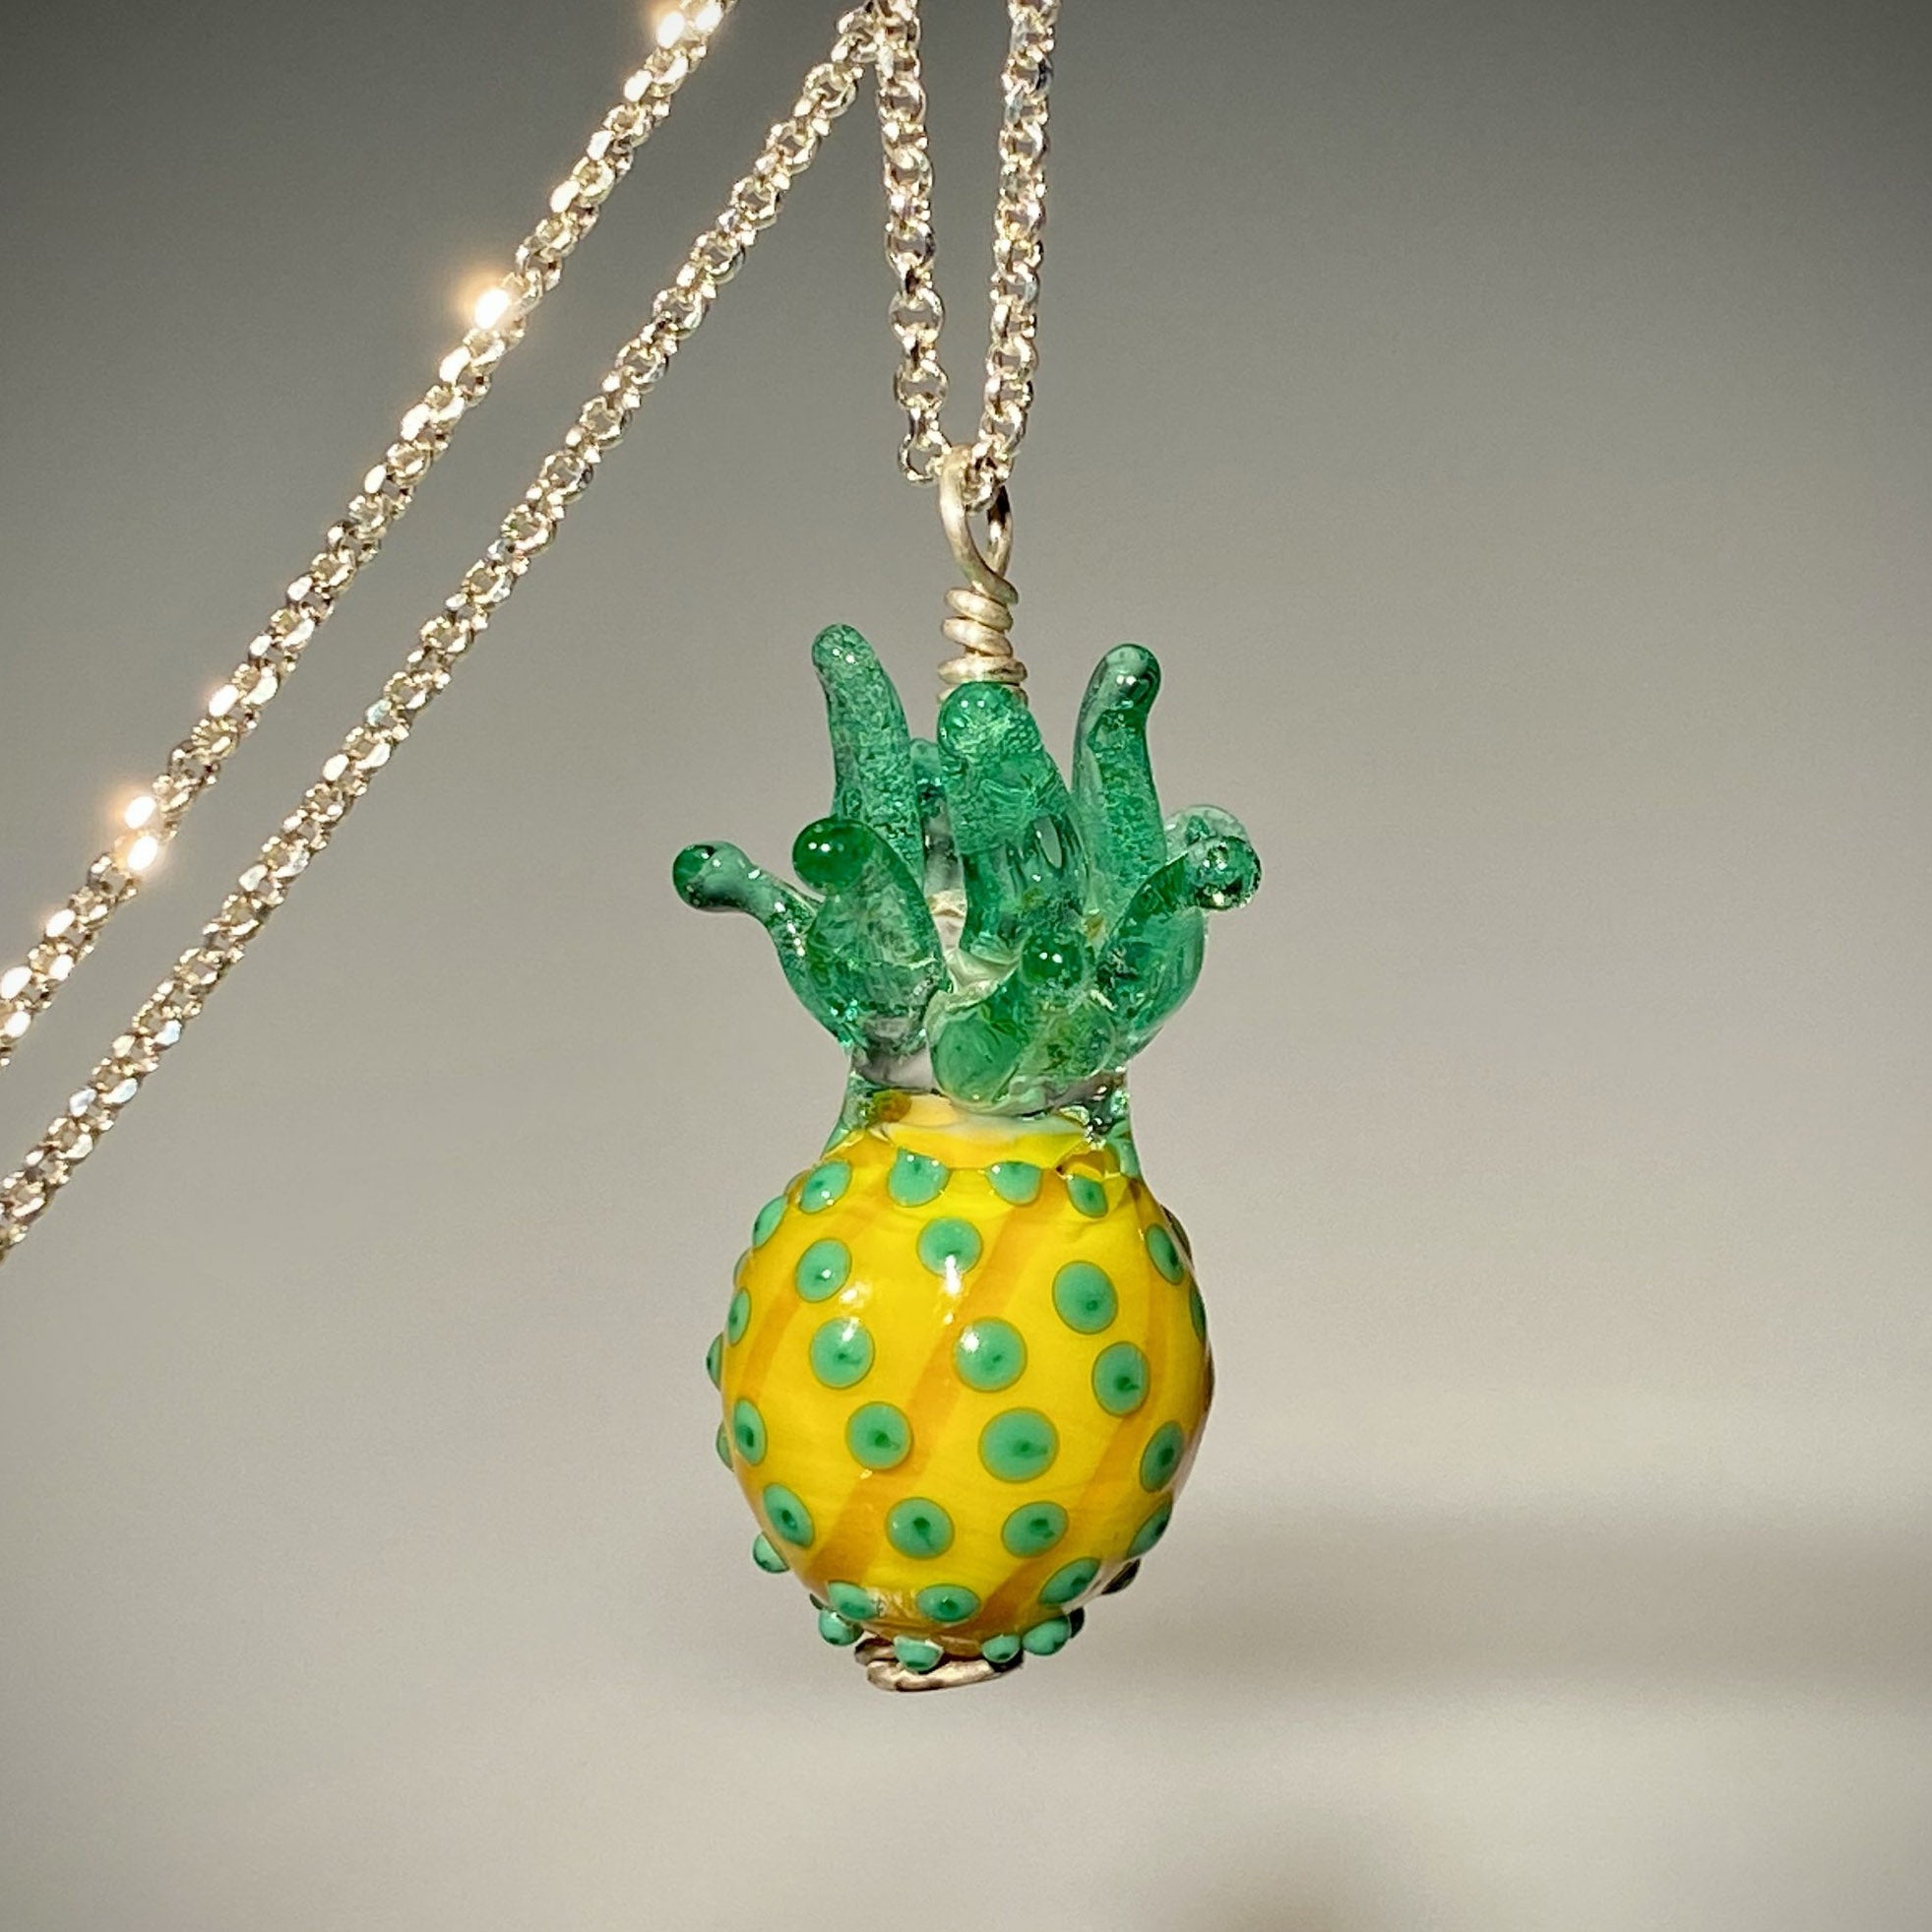 Glass Jewelry: Necklaces